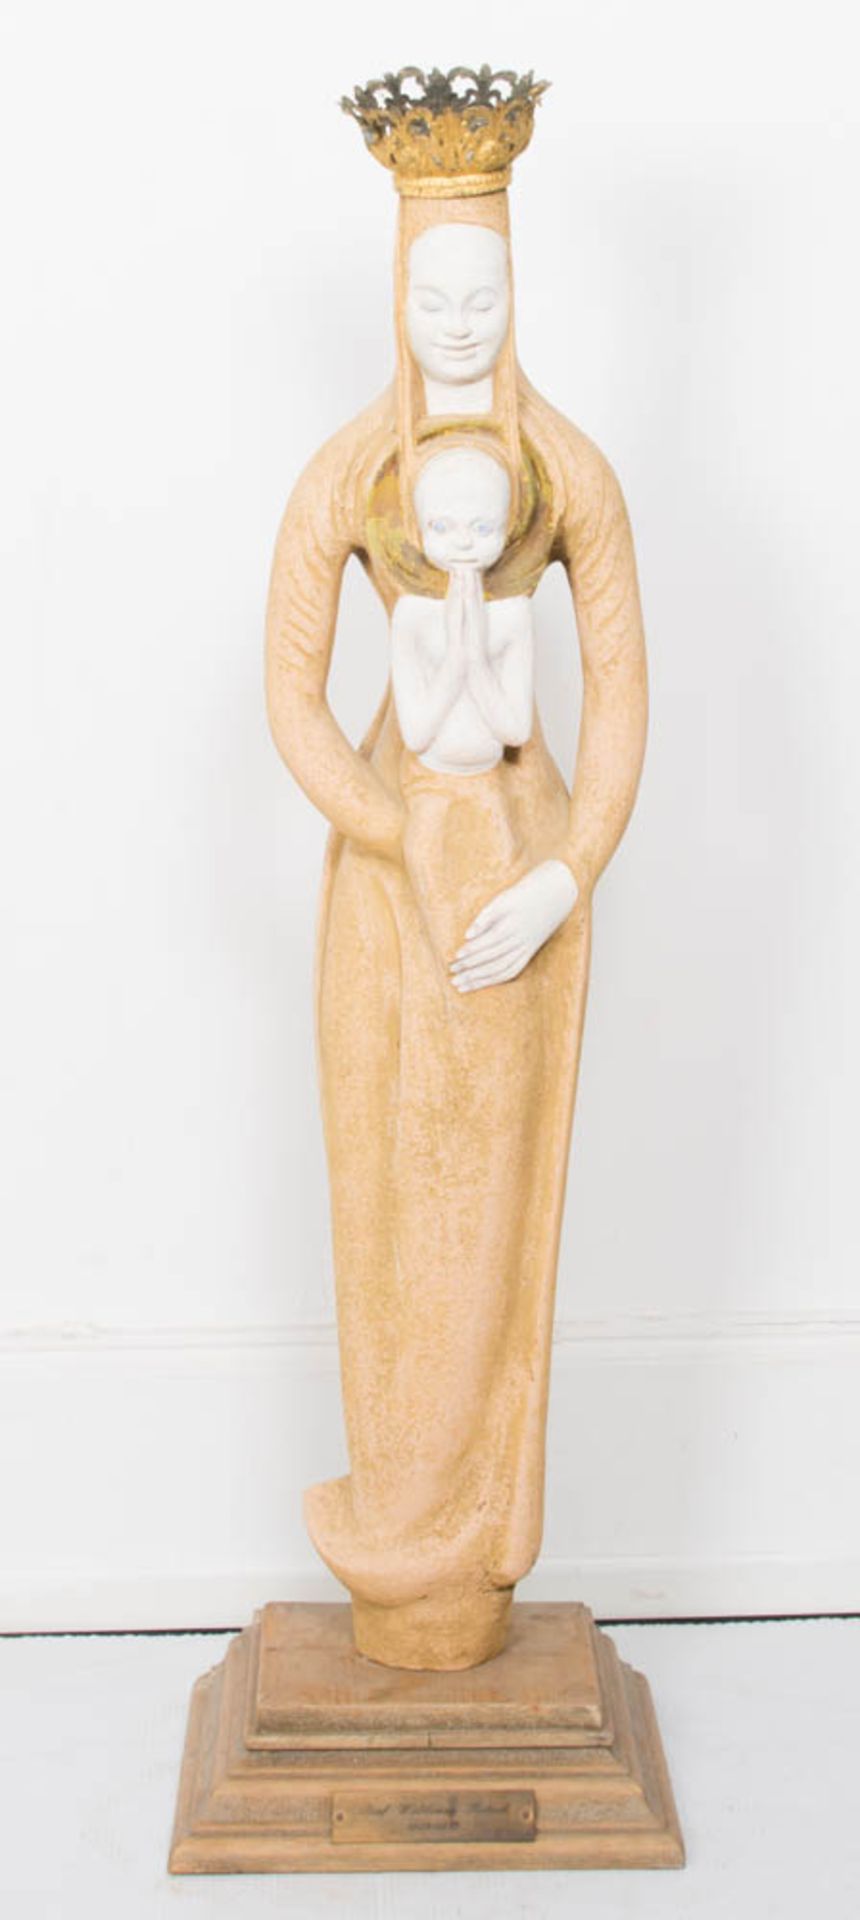 Skulptur der Madonna mit Kind auf Holzsockel. Stein/Metall/Holz.